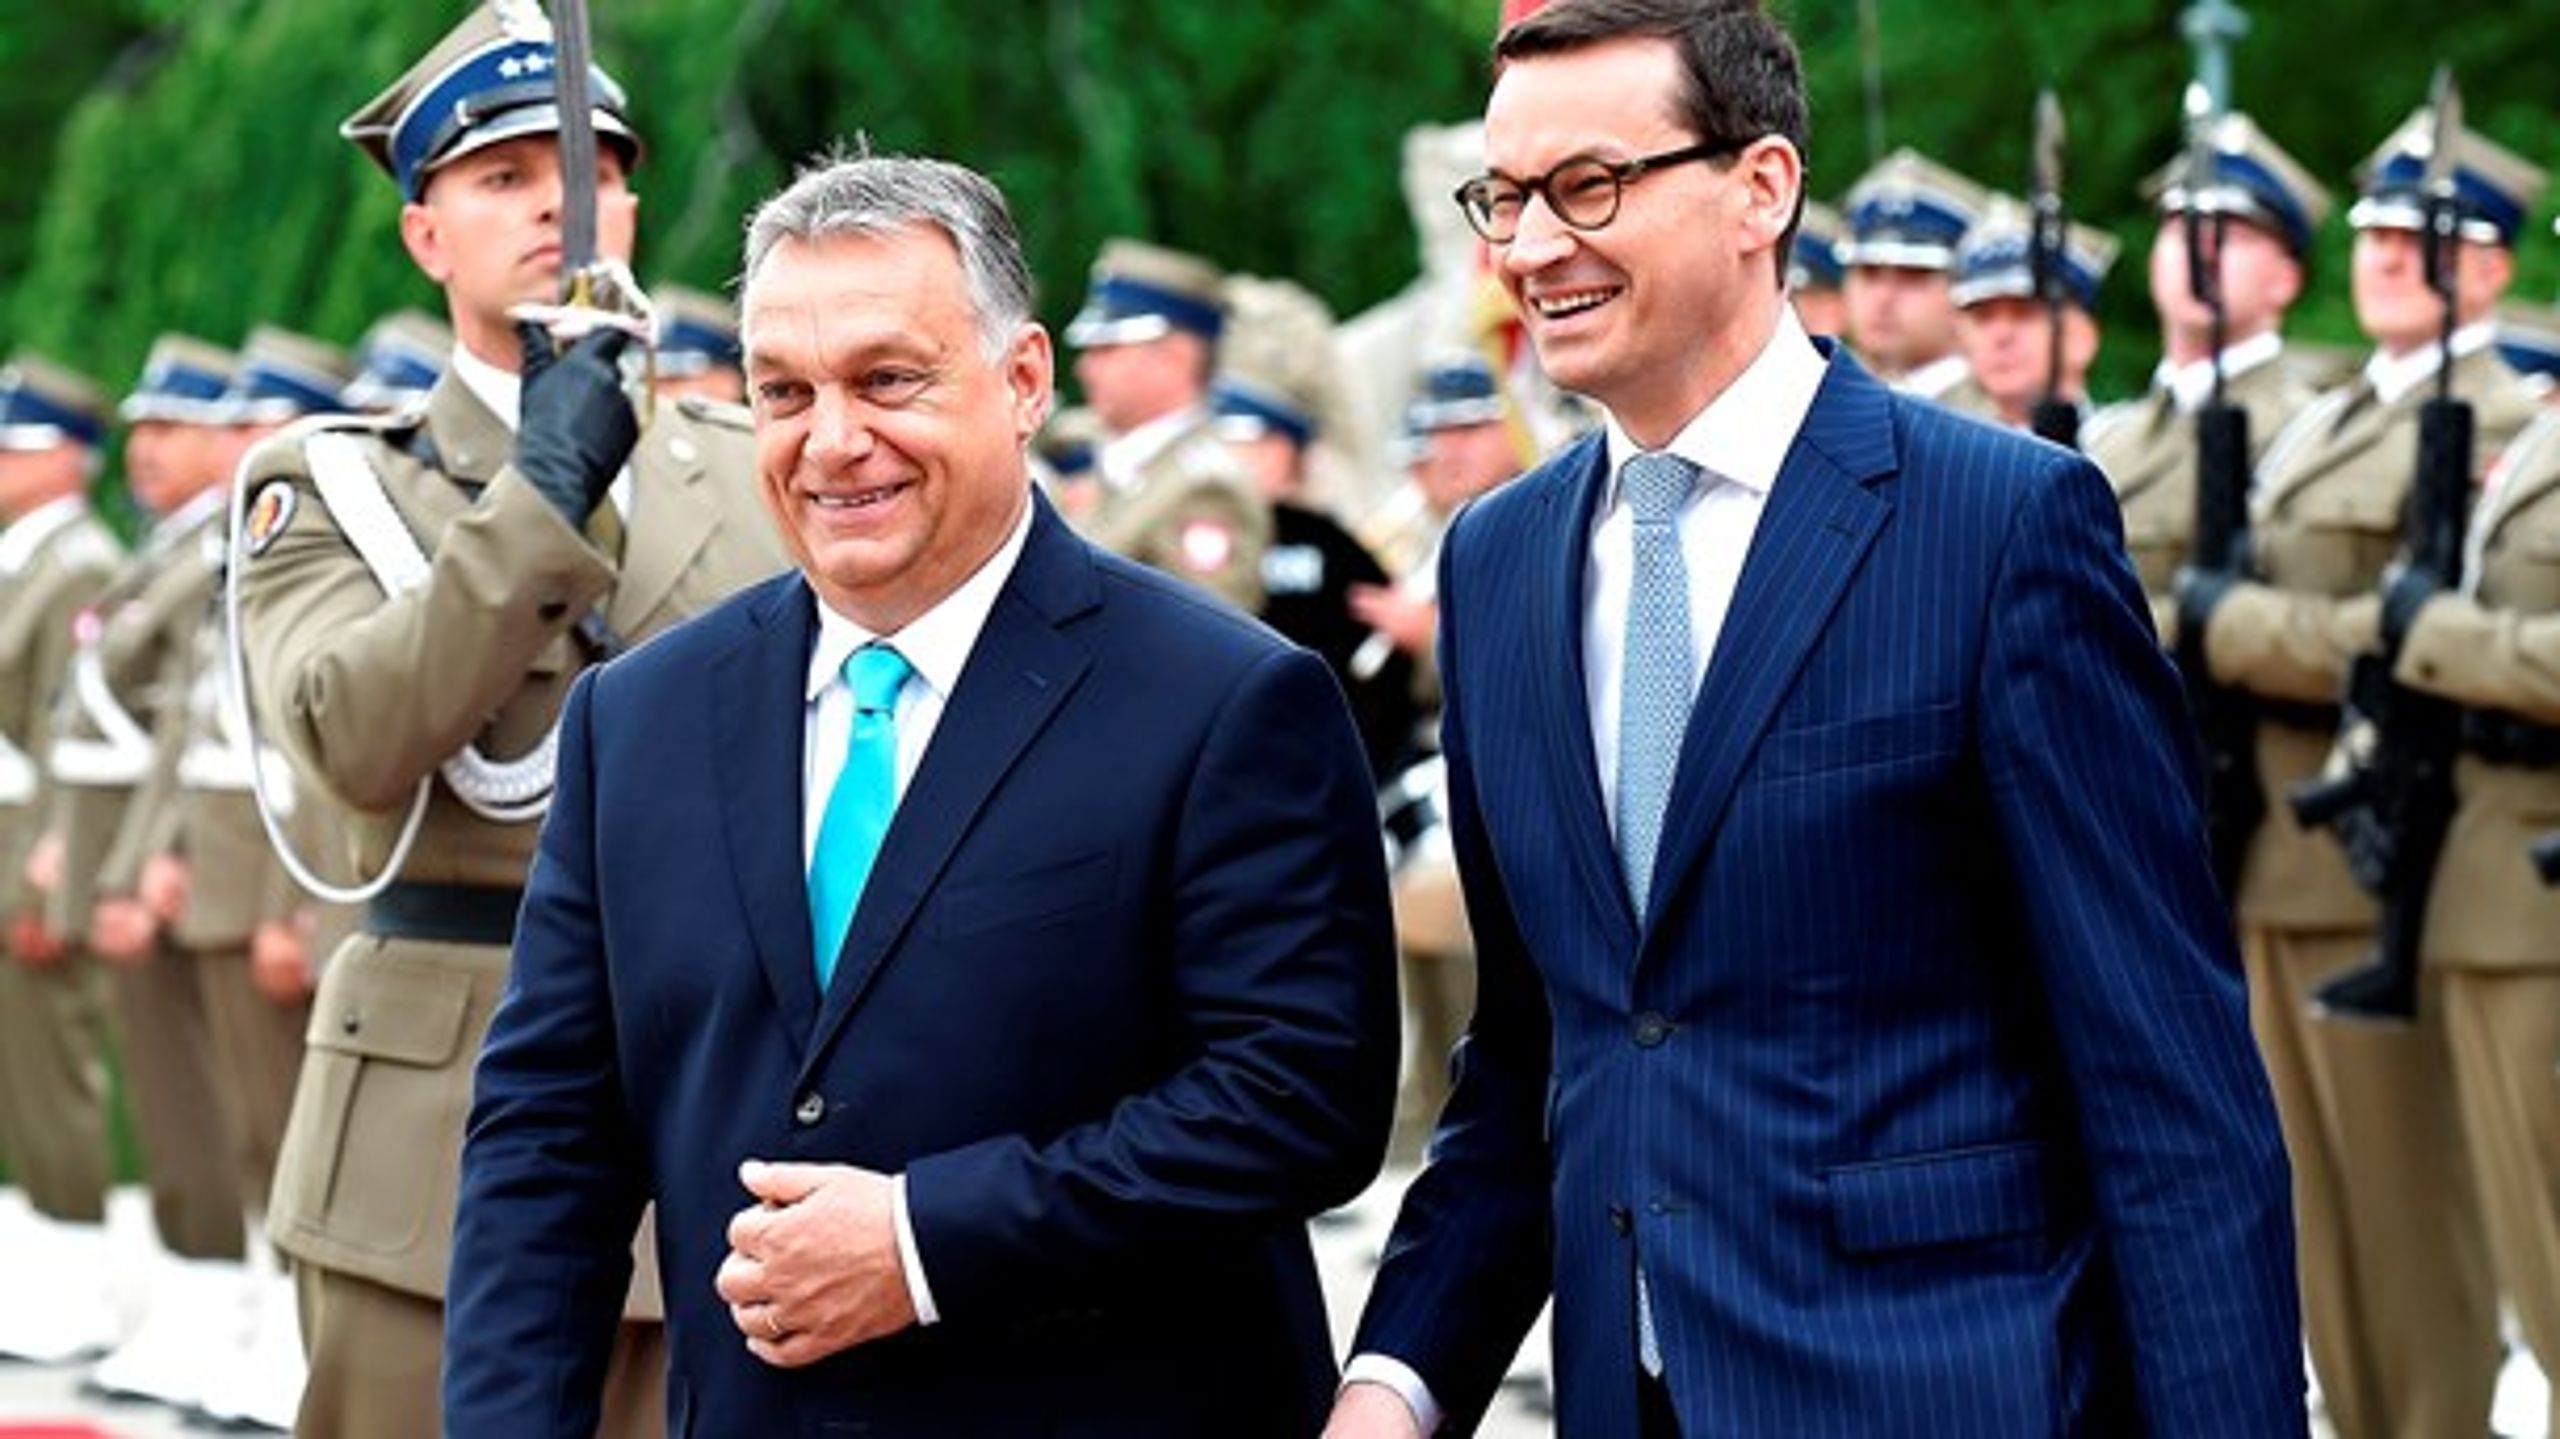 Det er en farlig vej at gå, hvis EU undlader at reagere på Ungarn og Polens illiberale politik, skriver Vibe Termansen. (På billedet premierminister i Ungarn Viktor Orbán og premierminister i Polen Mateusz Morawieckis).